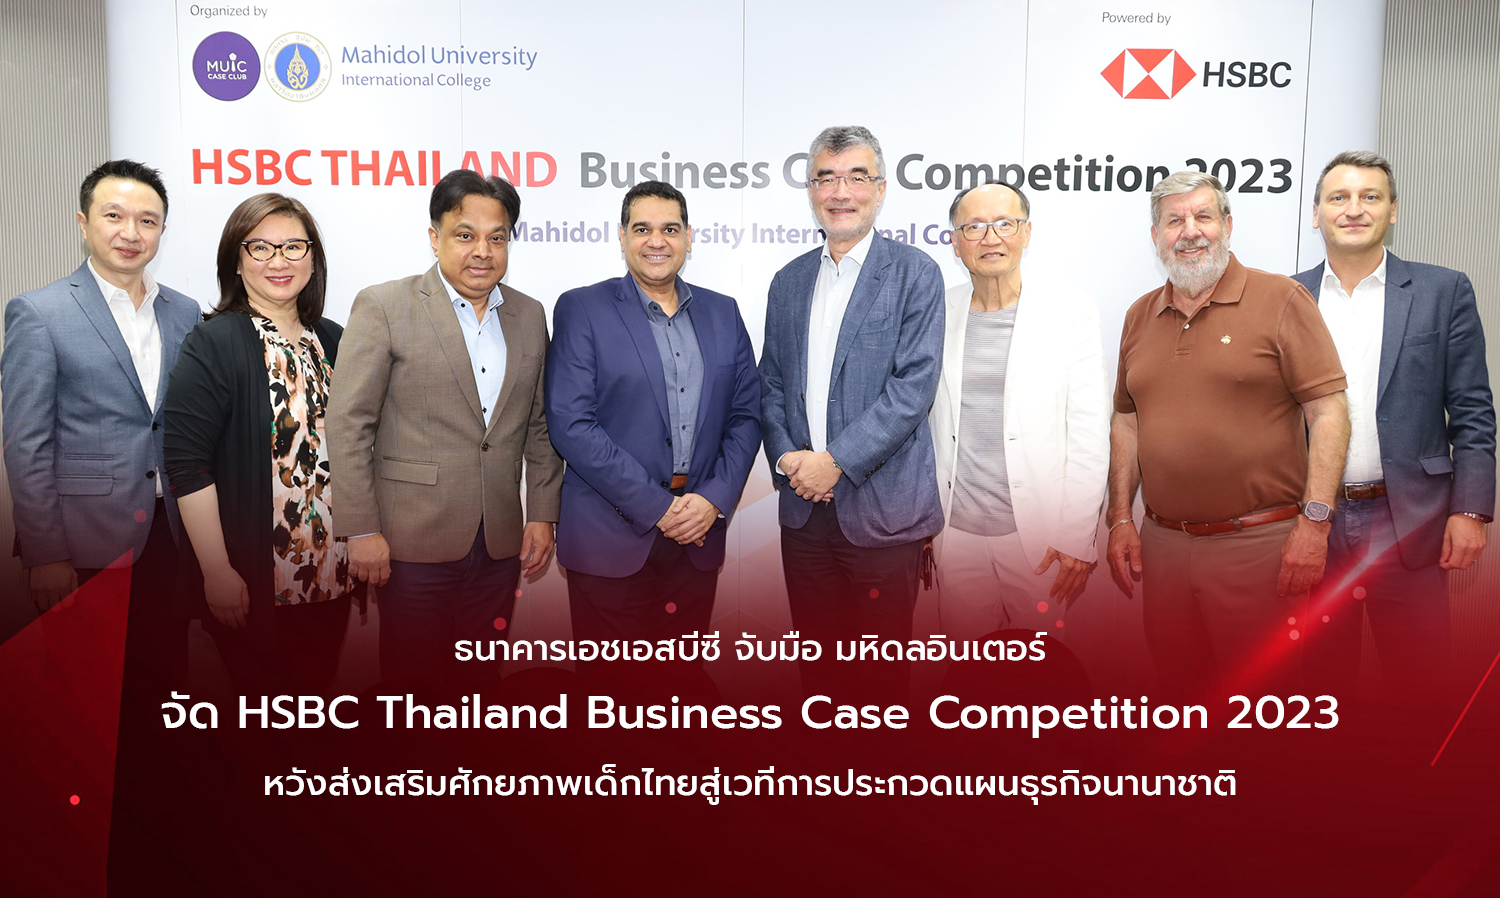 ธนาคารเอชเอสบีซี จับมือ มหิดลอินเตอร์ จัด HSBC Thailand Business Case Competition 2023